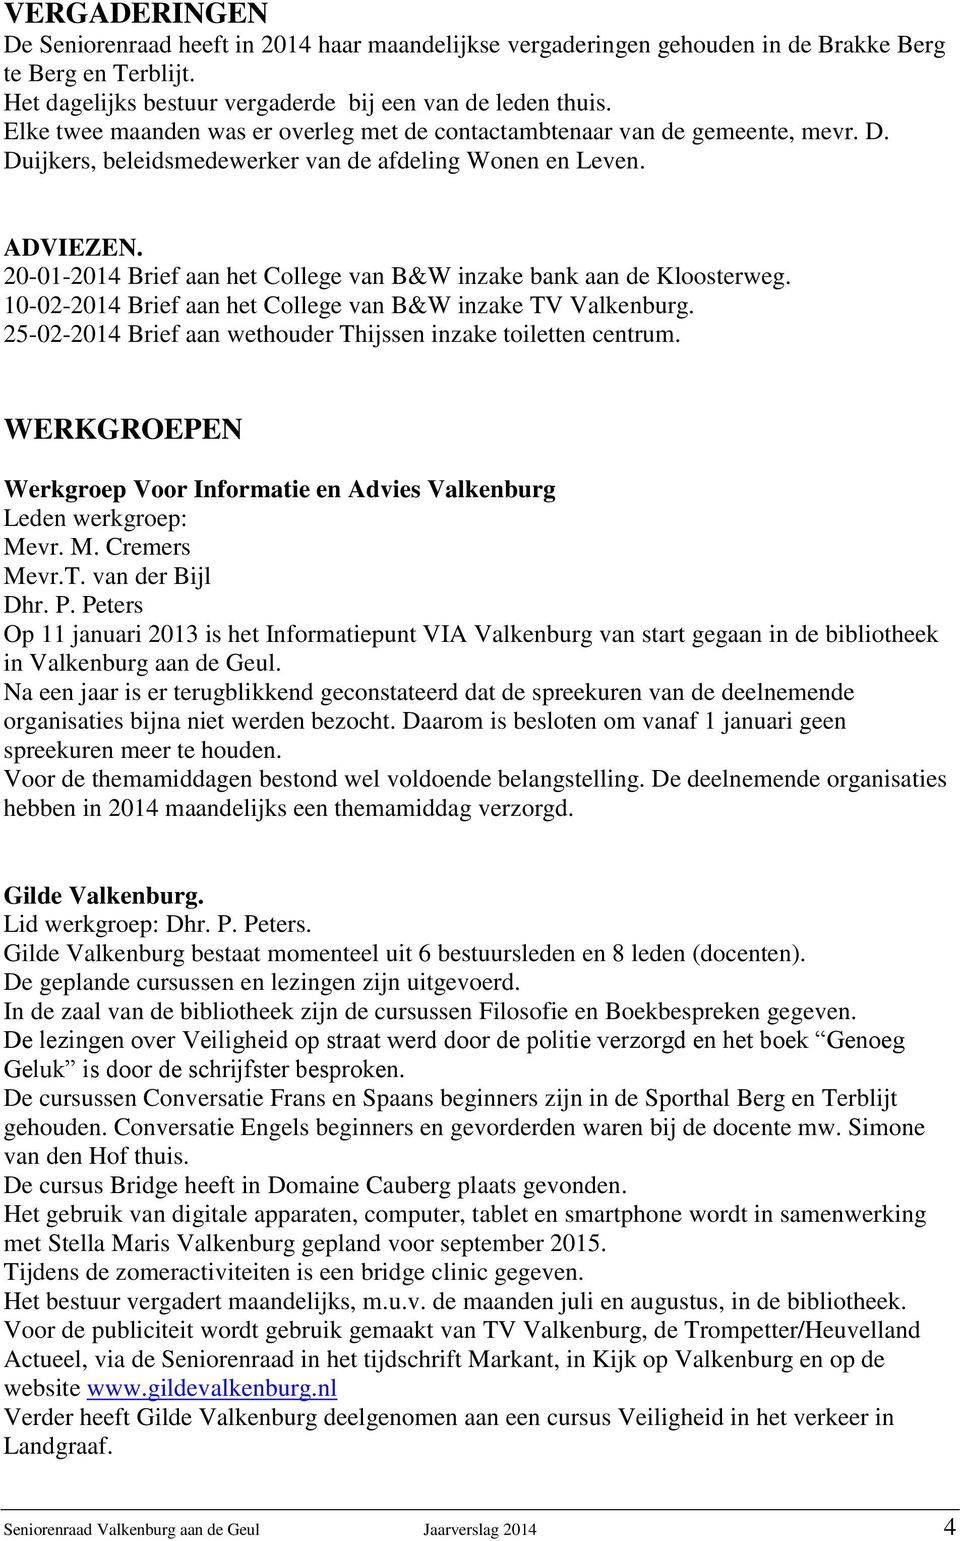 20-01-2014 Brief aan het College van B&W inzake bank aan de Kloosterweg. 10-02-2014 Brief aan het College van B&W inzake TV Valkenburg.